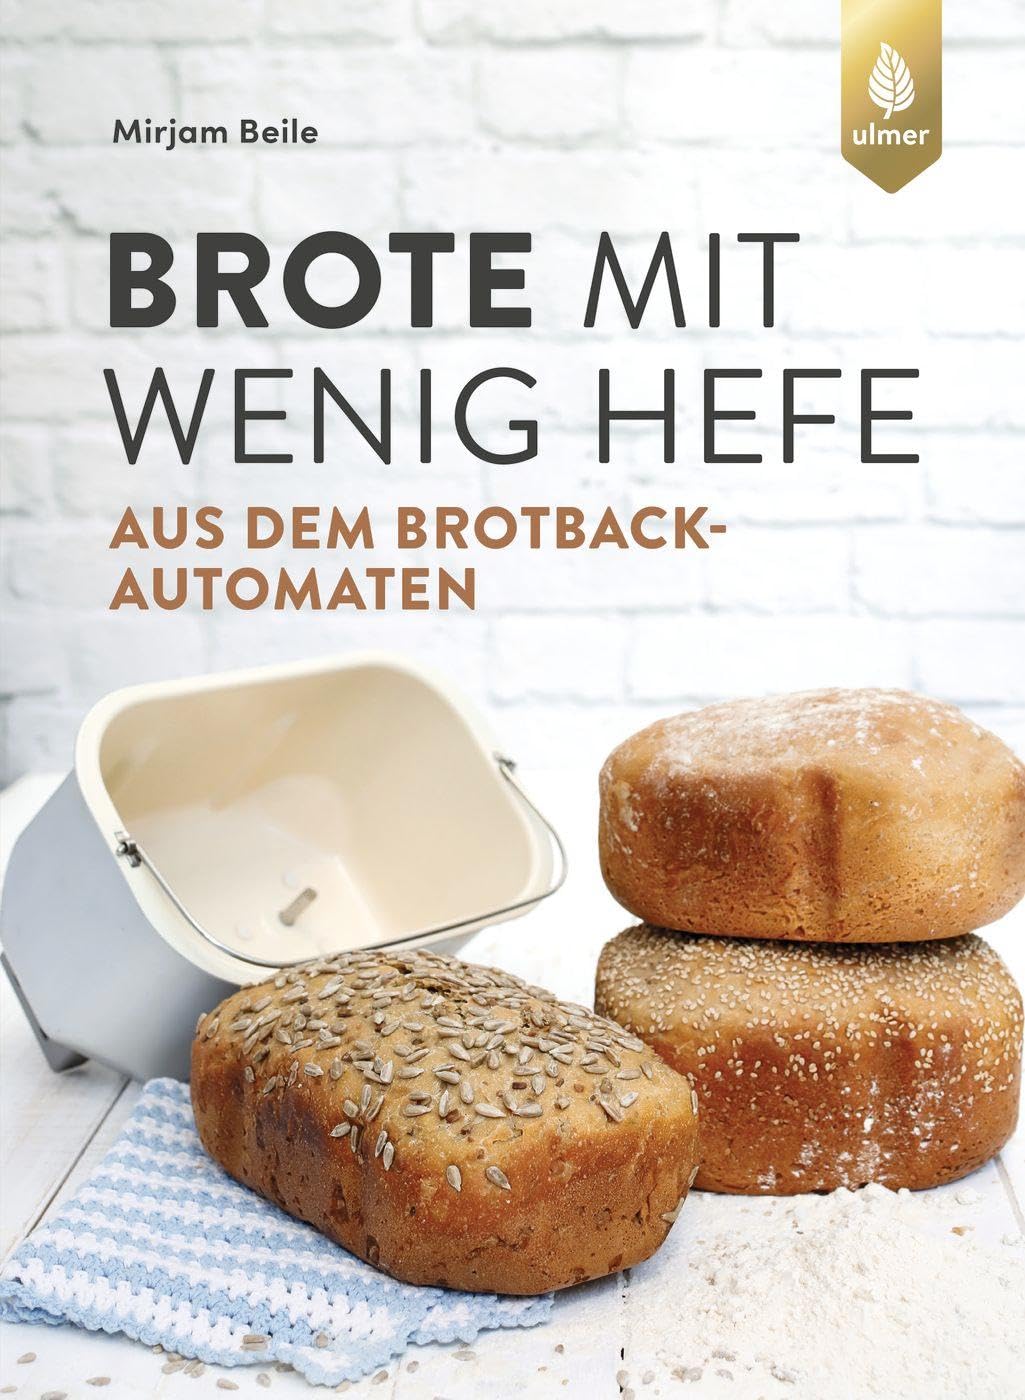 Brote mit wenig Hefe aus dem Brotbackautomaten, Buchcover Mirjam Beile